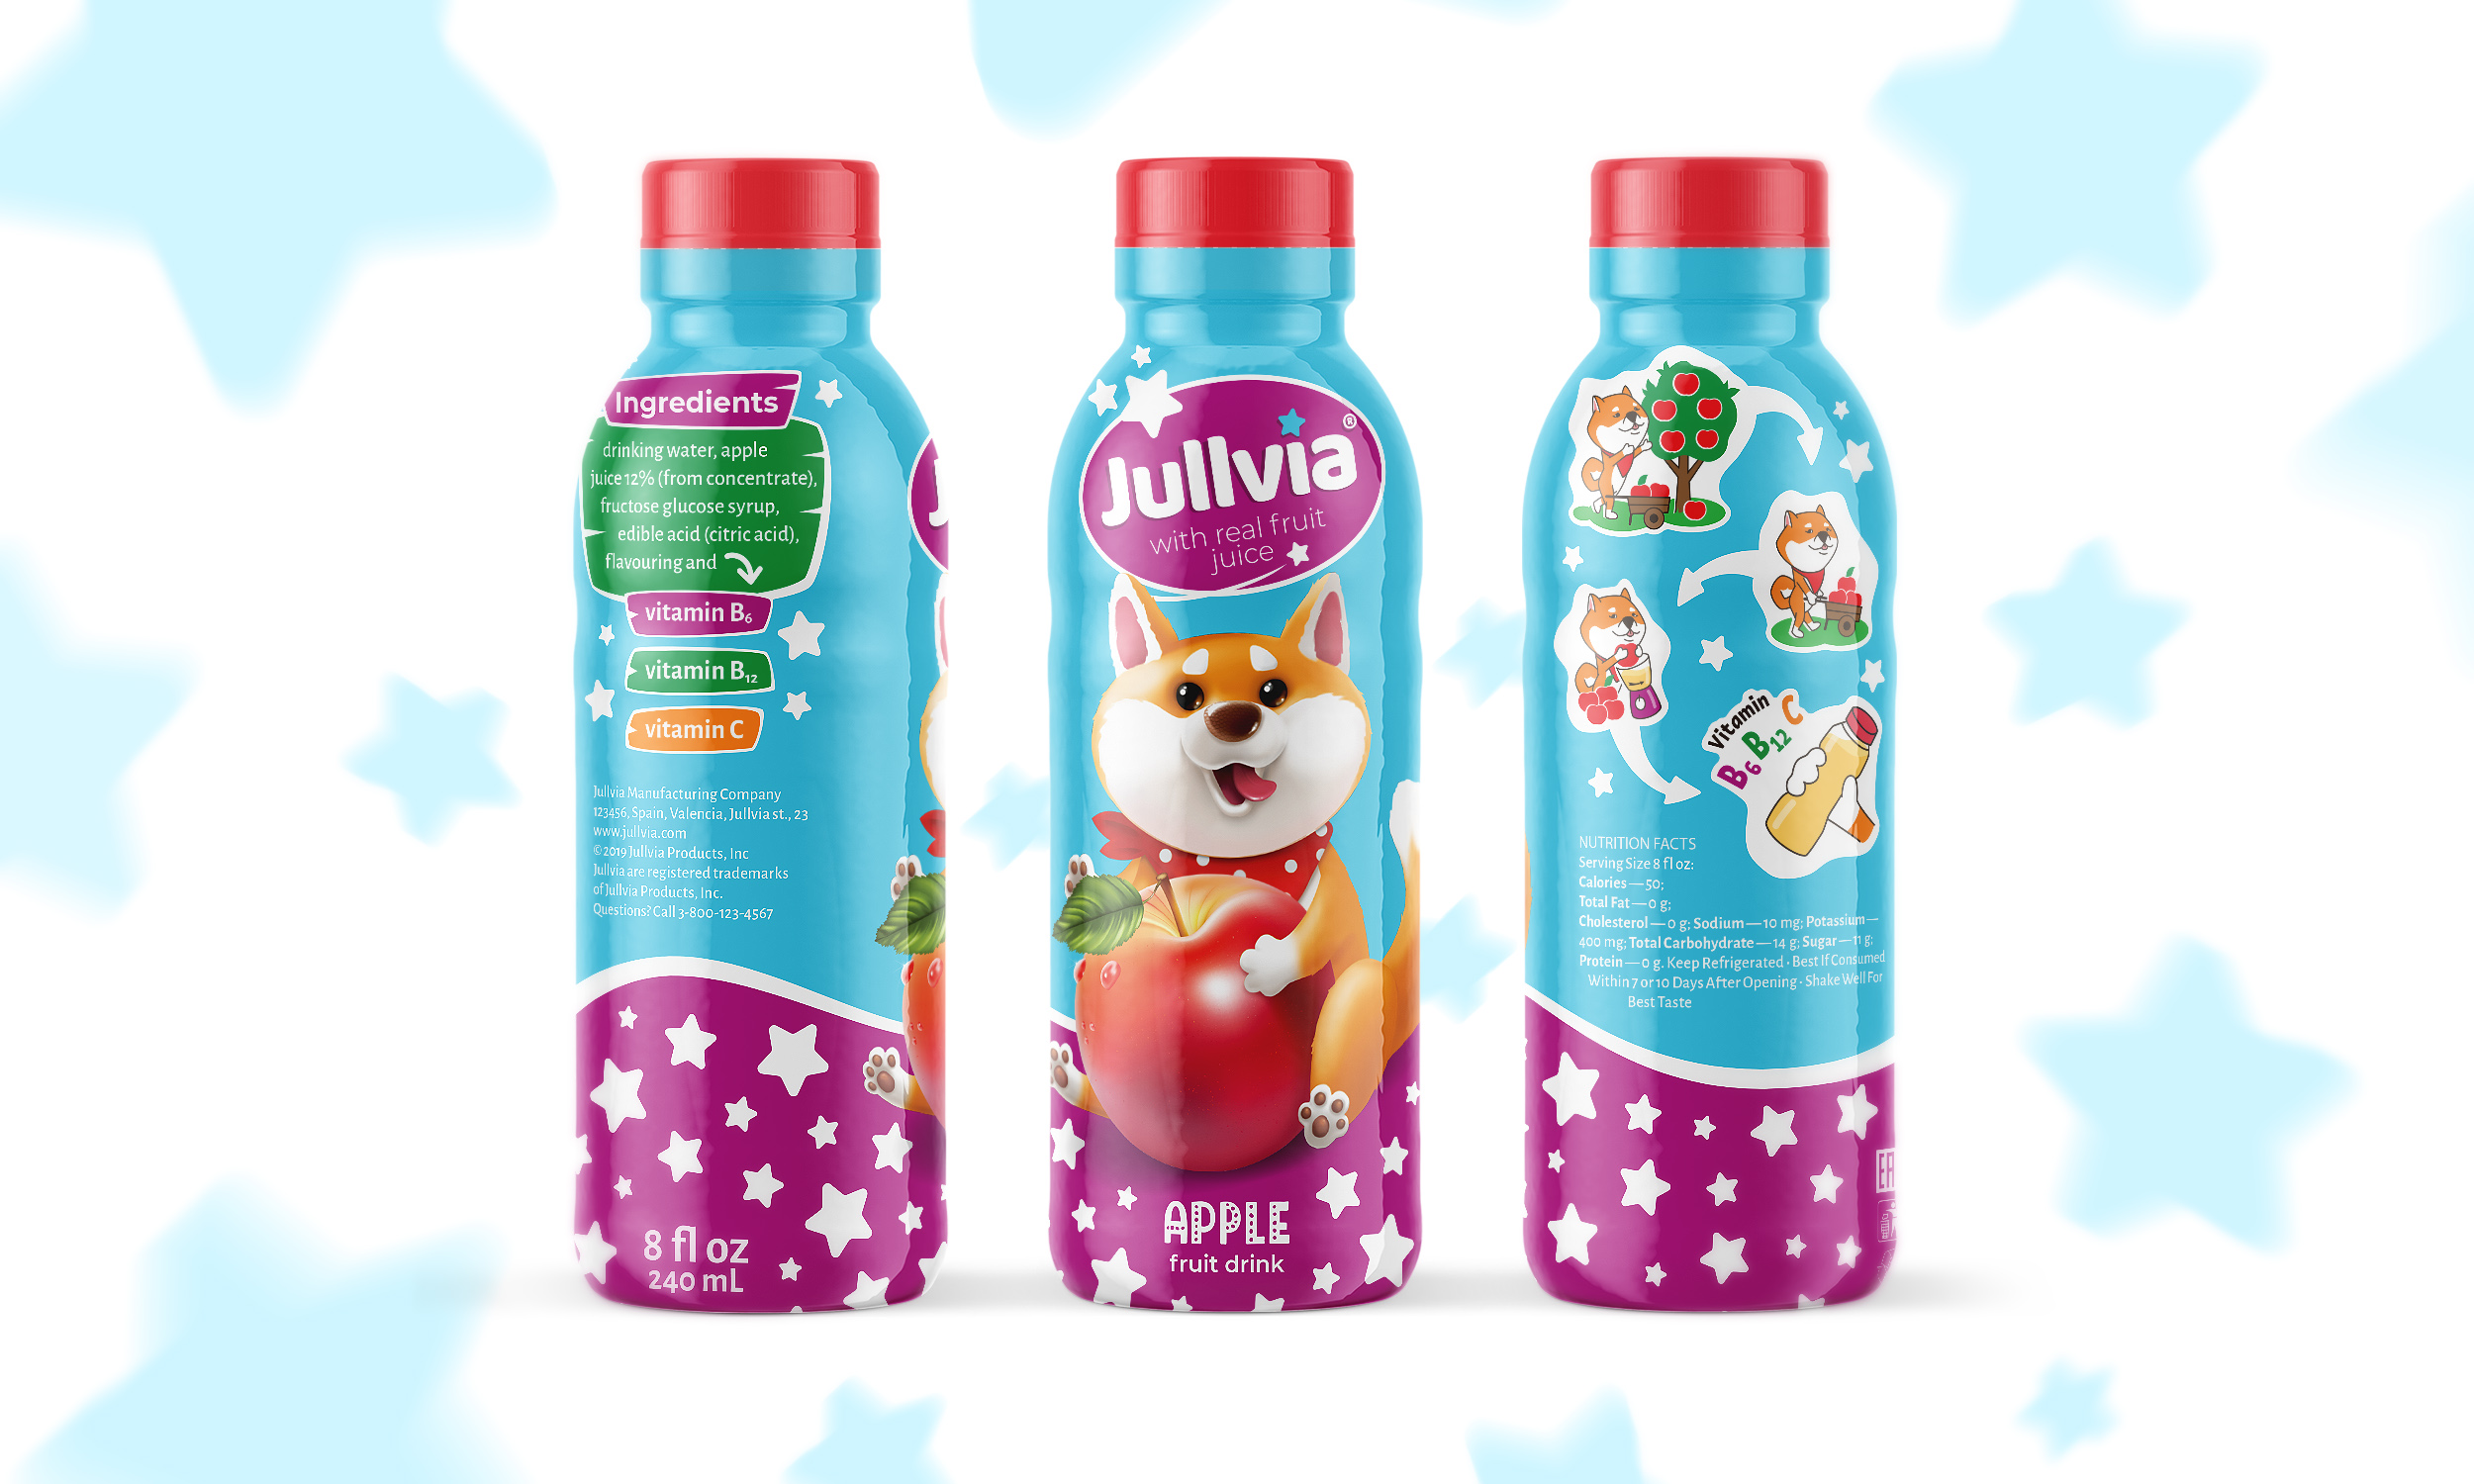 Jullvia – Children’s Juice Drinks From Spain